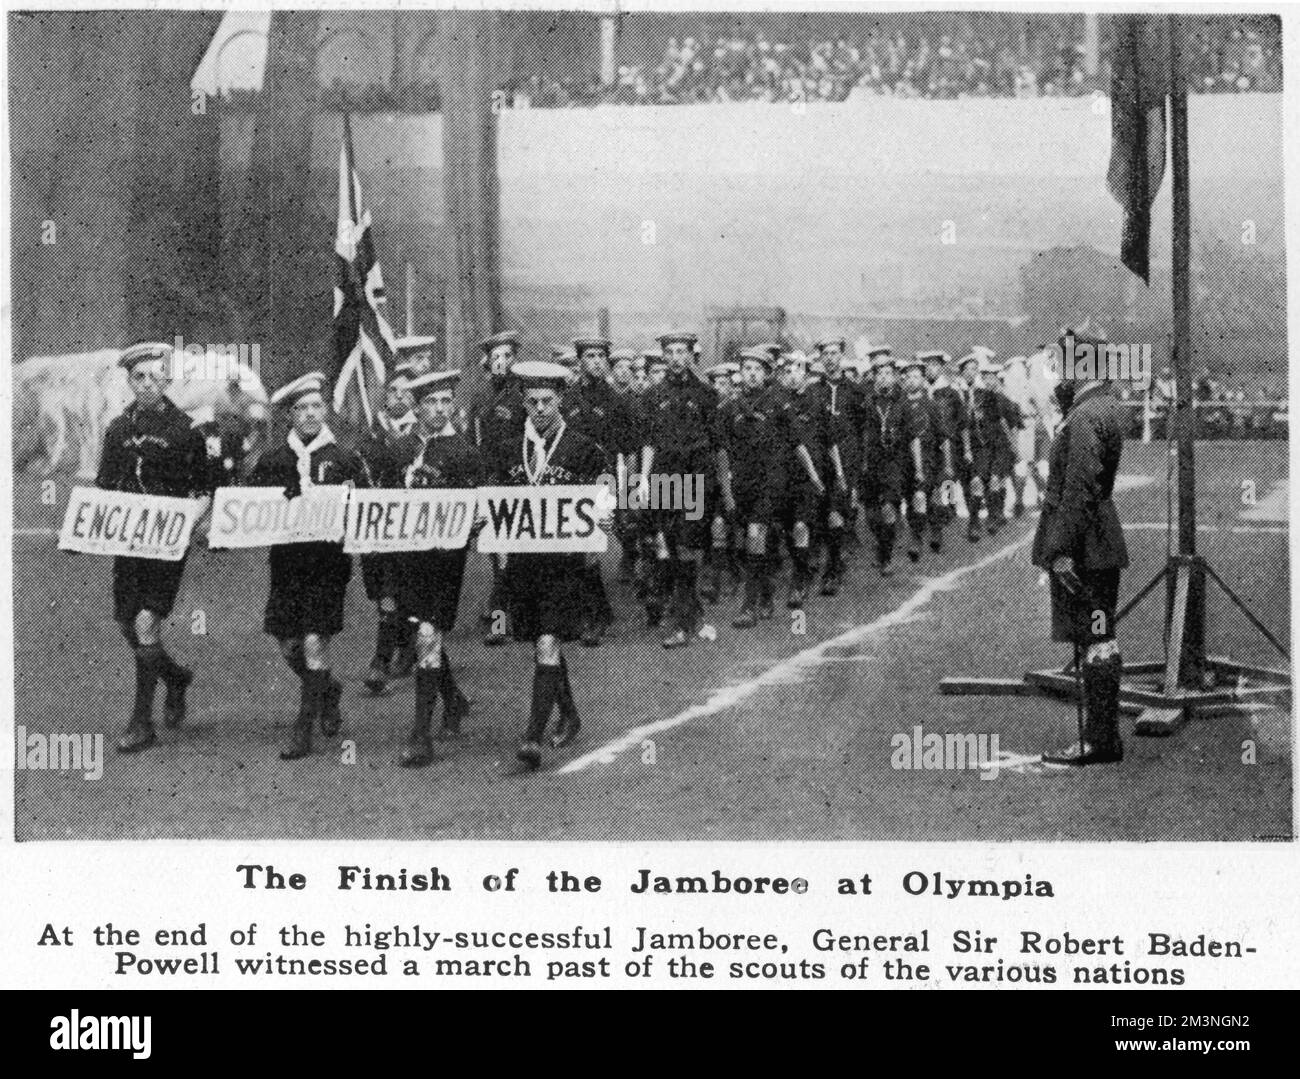 Les scouts des îles britanniques défilent devant le Chef Scout, le général Sir Robert Baden-Powell, dans le cadre d'un défilé mettant en vedette des scouts des nombreuses nations qui ont assisté au premier Jamboree mondial, basé principalement à Olympia, Londres, à l'été 1920. Juillet - août 1920 Banque D'Images